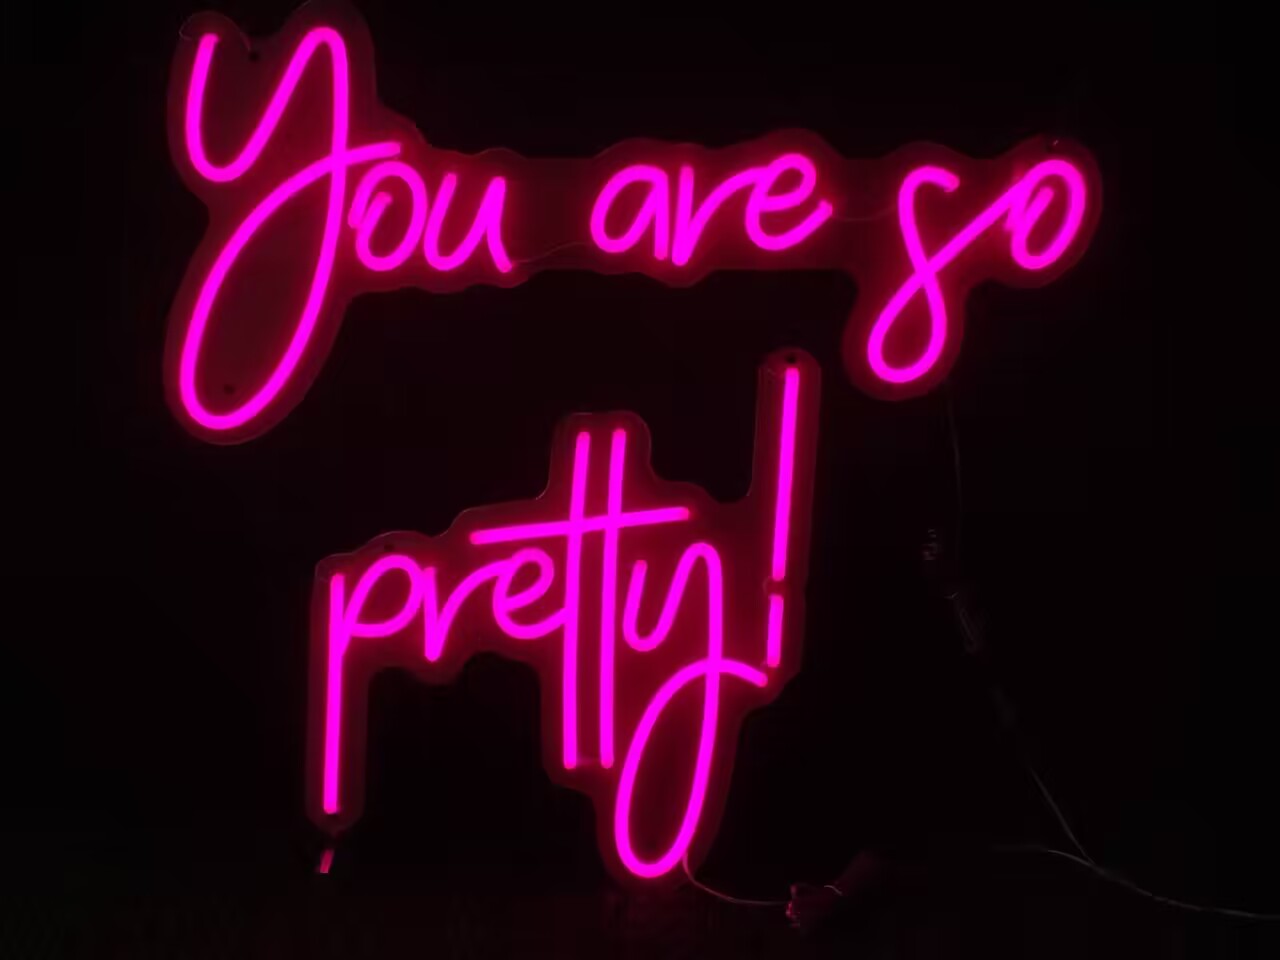 You Are So Pretty Neon Sign